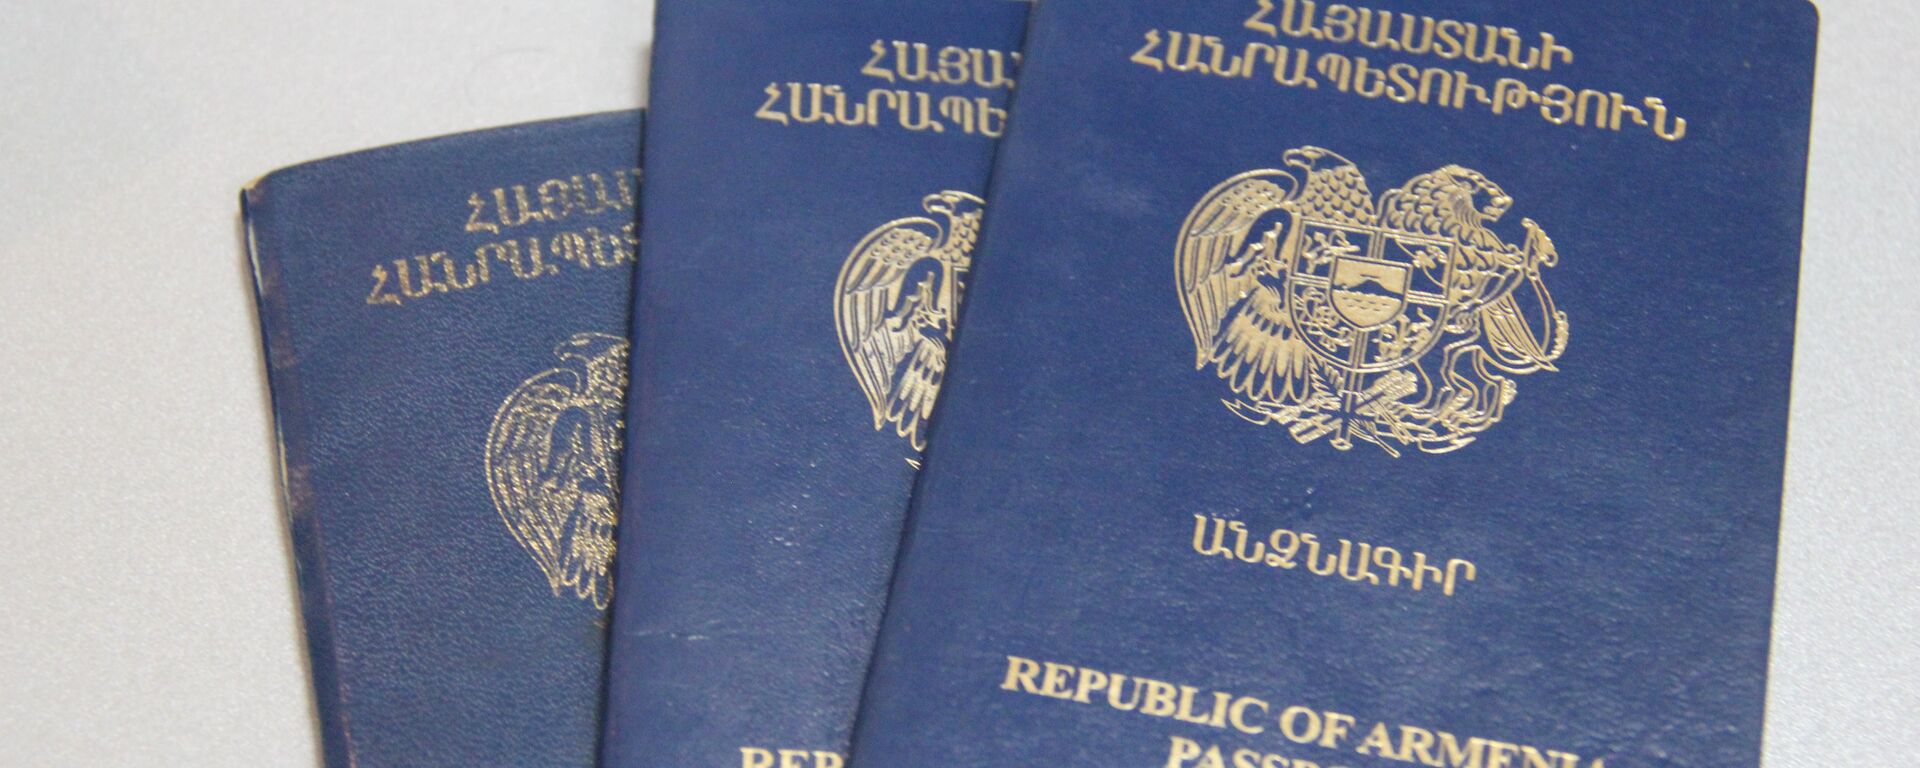 Паспорт гражданина Республики - Sputnik Армения, 1920, 14.10.2021